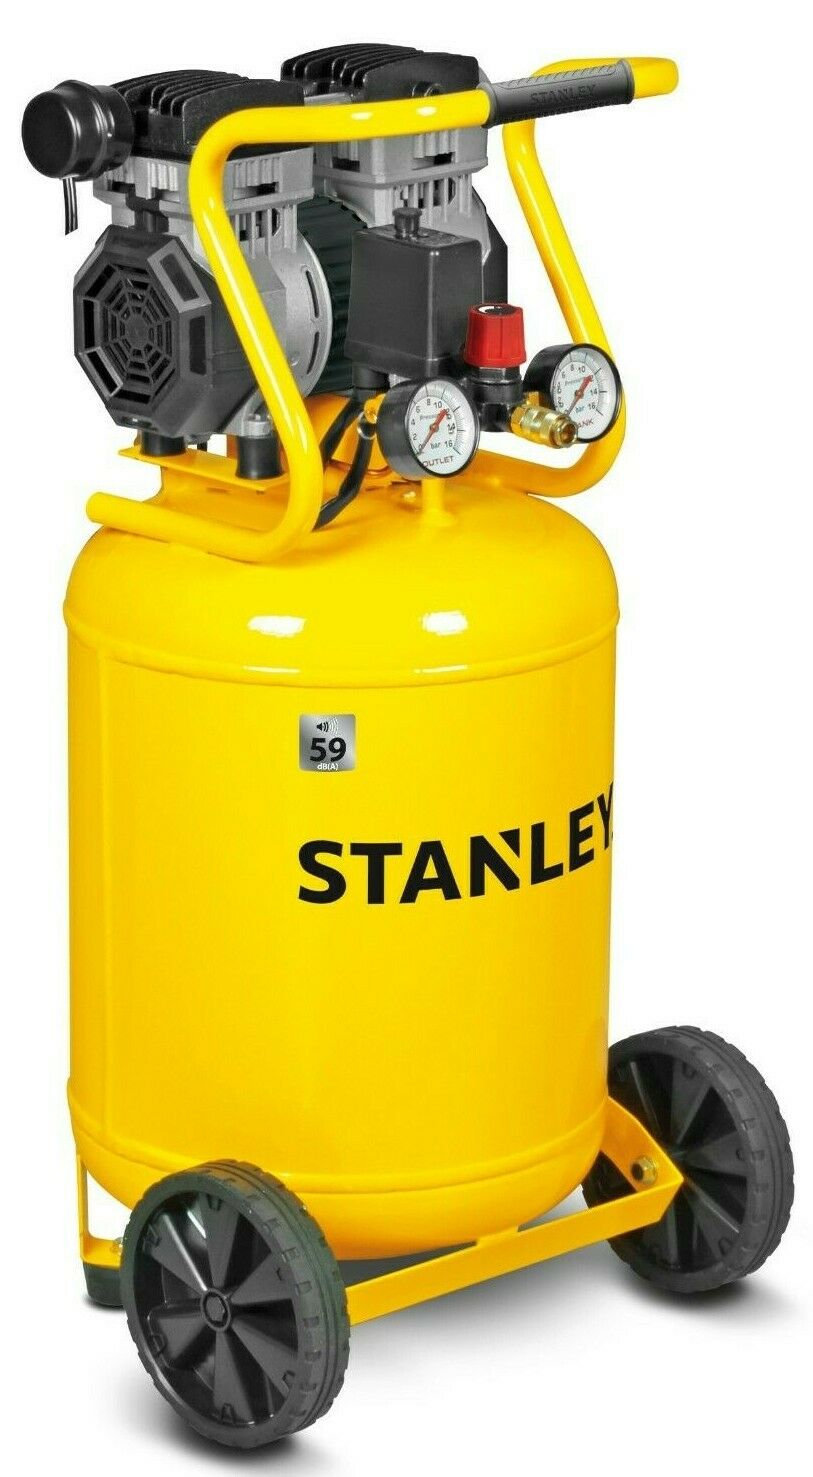 STANLEY - Compressore super silenziato 50 lt - Ferramenta Stizzoli